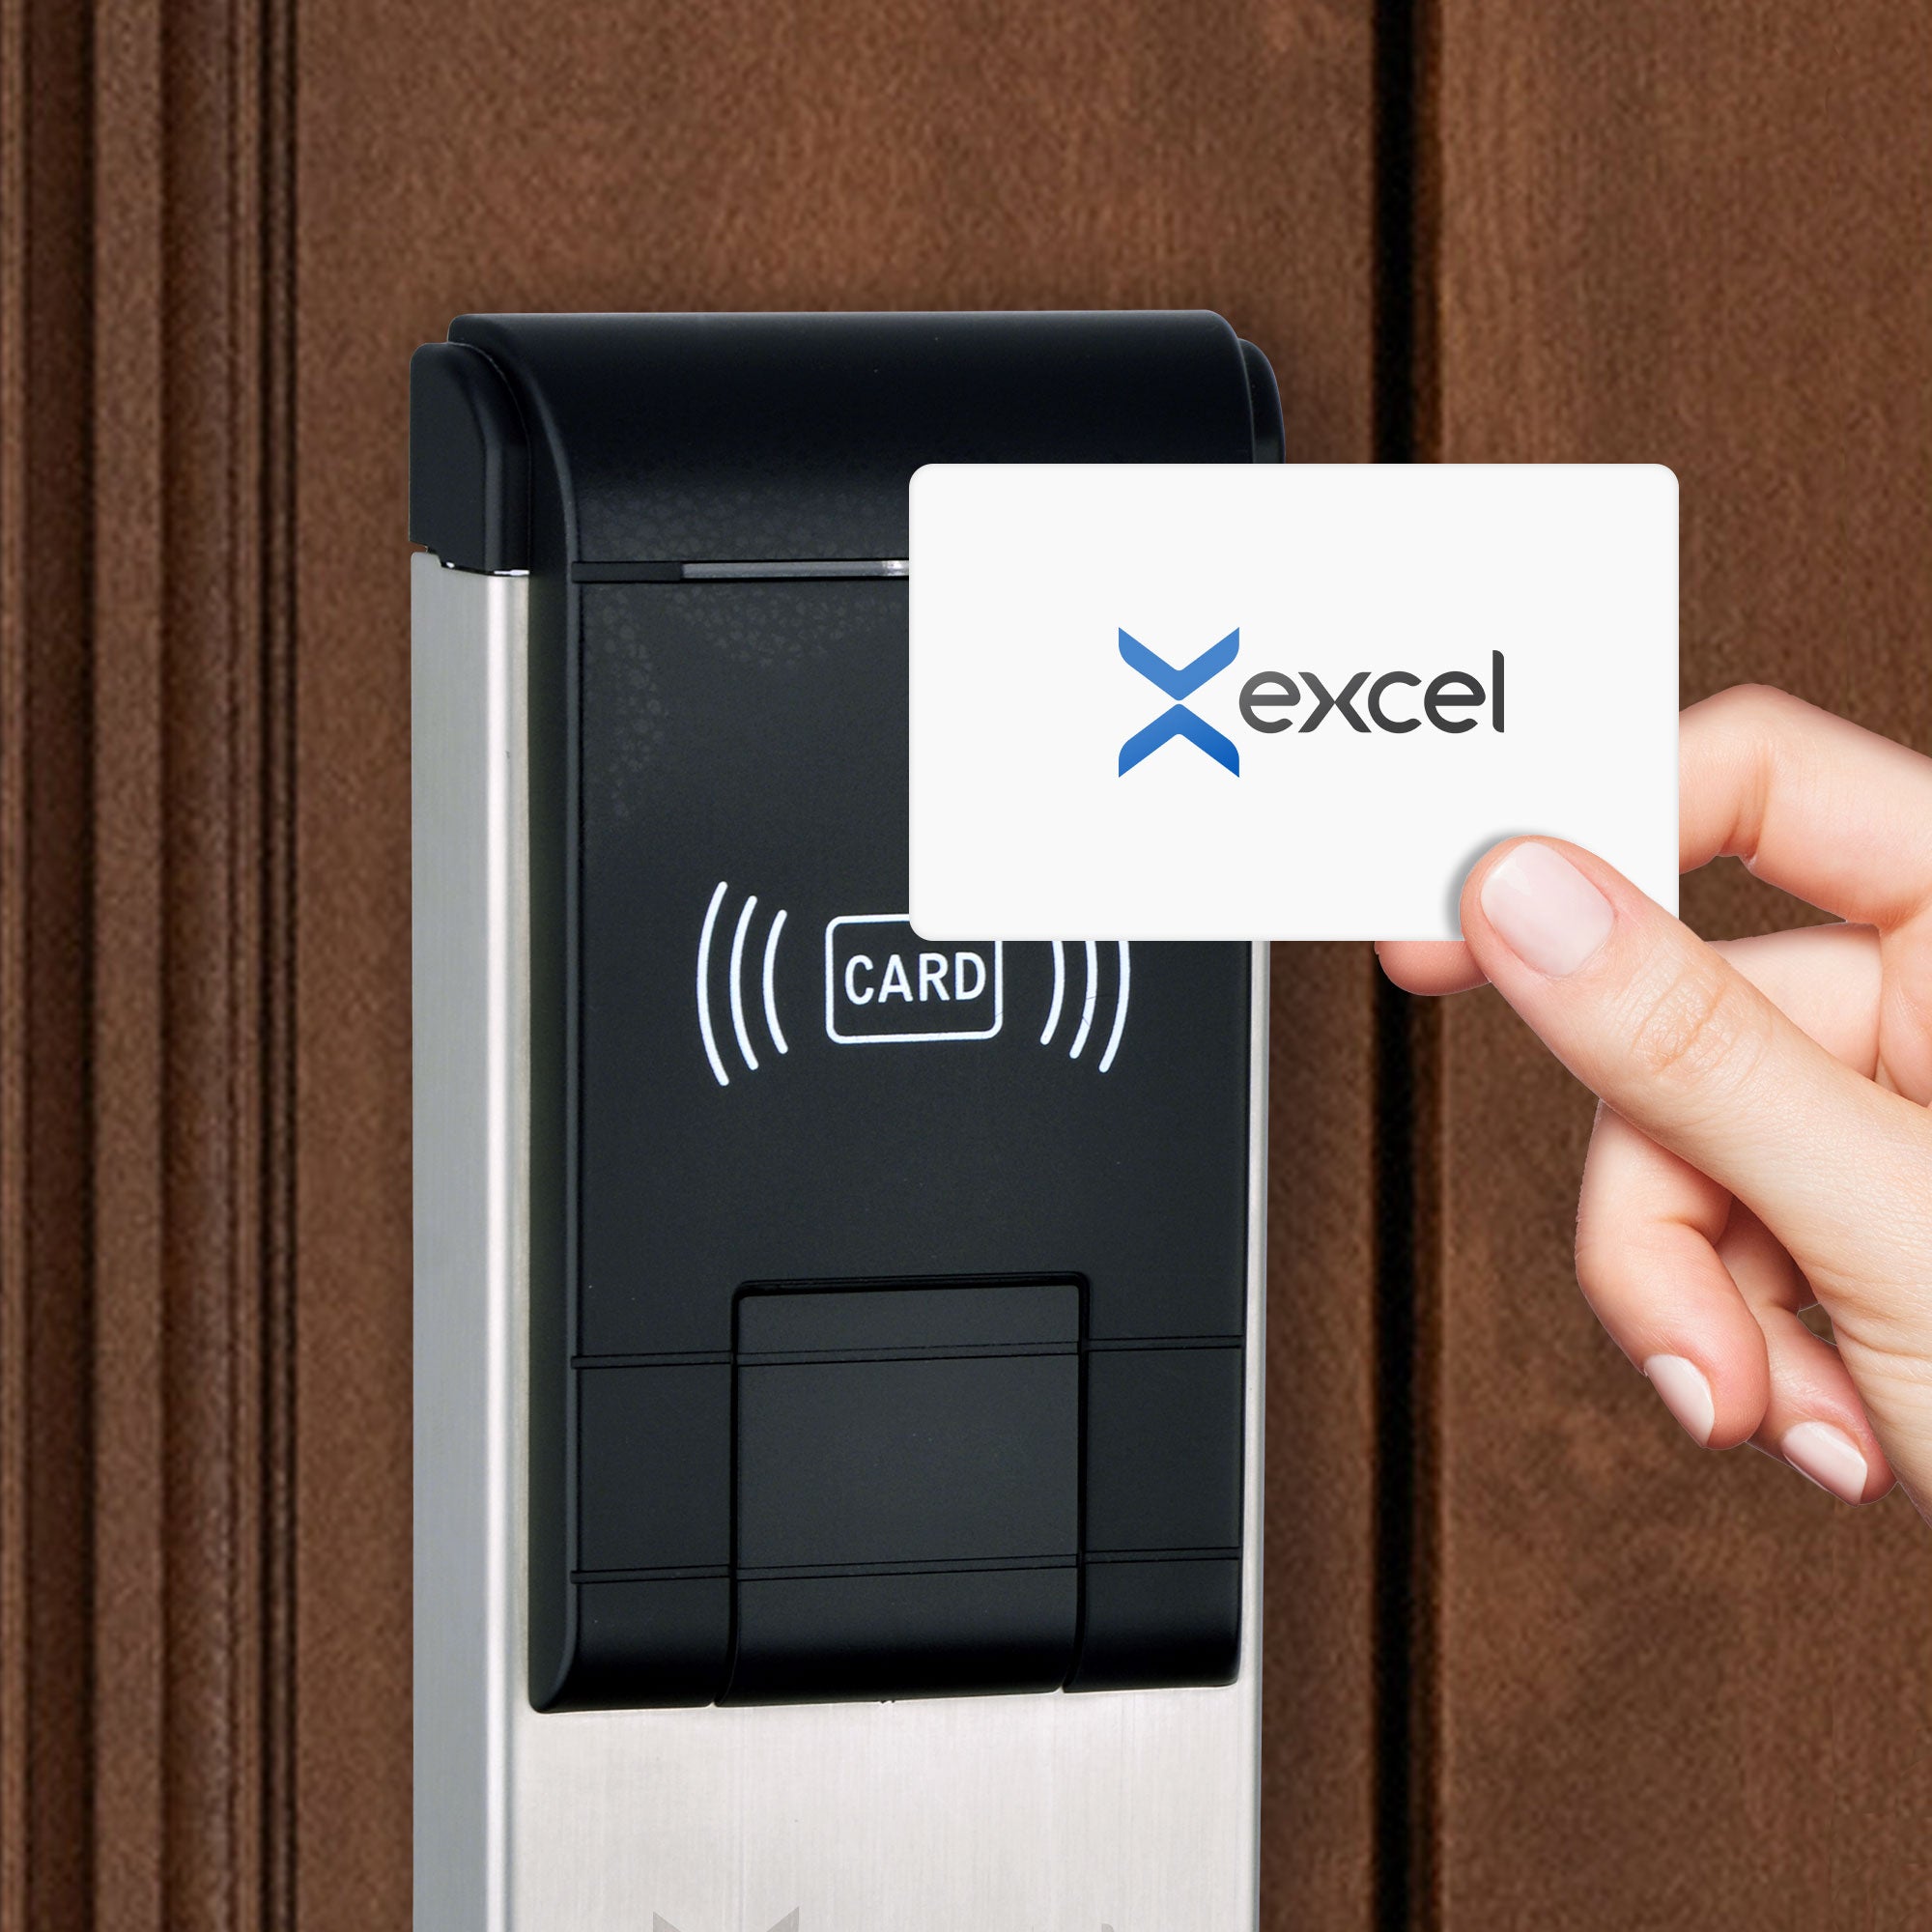 Cerradura hotelera Excel 930 con lector de tarjeta RFID para hoteles